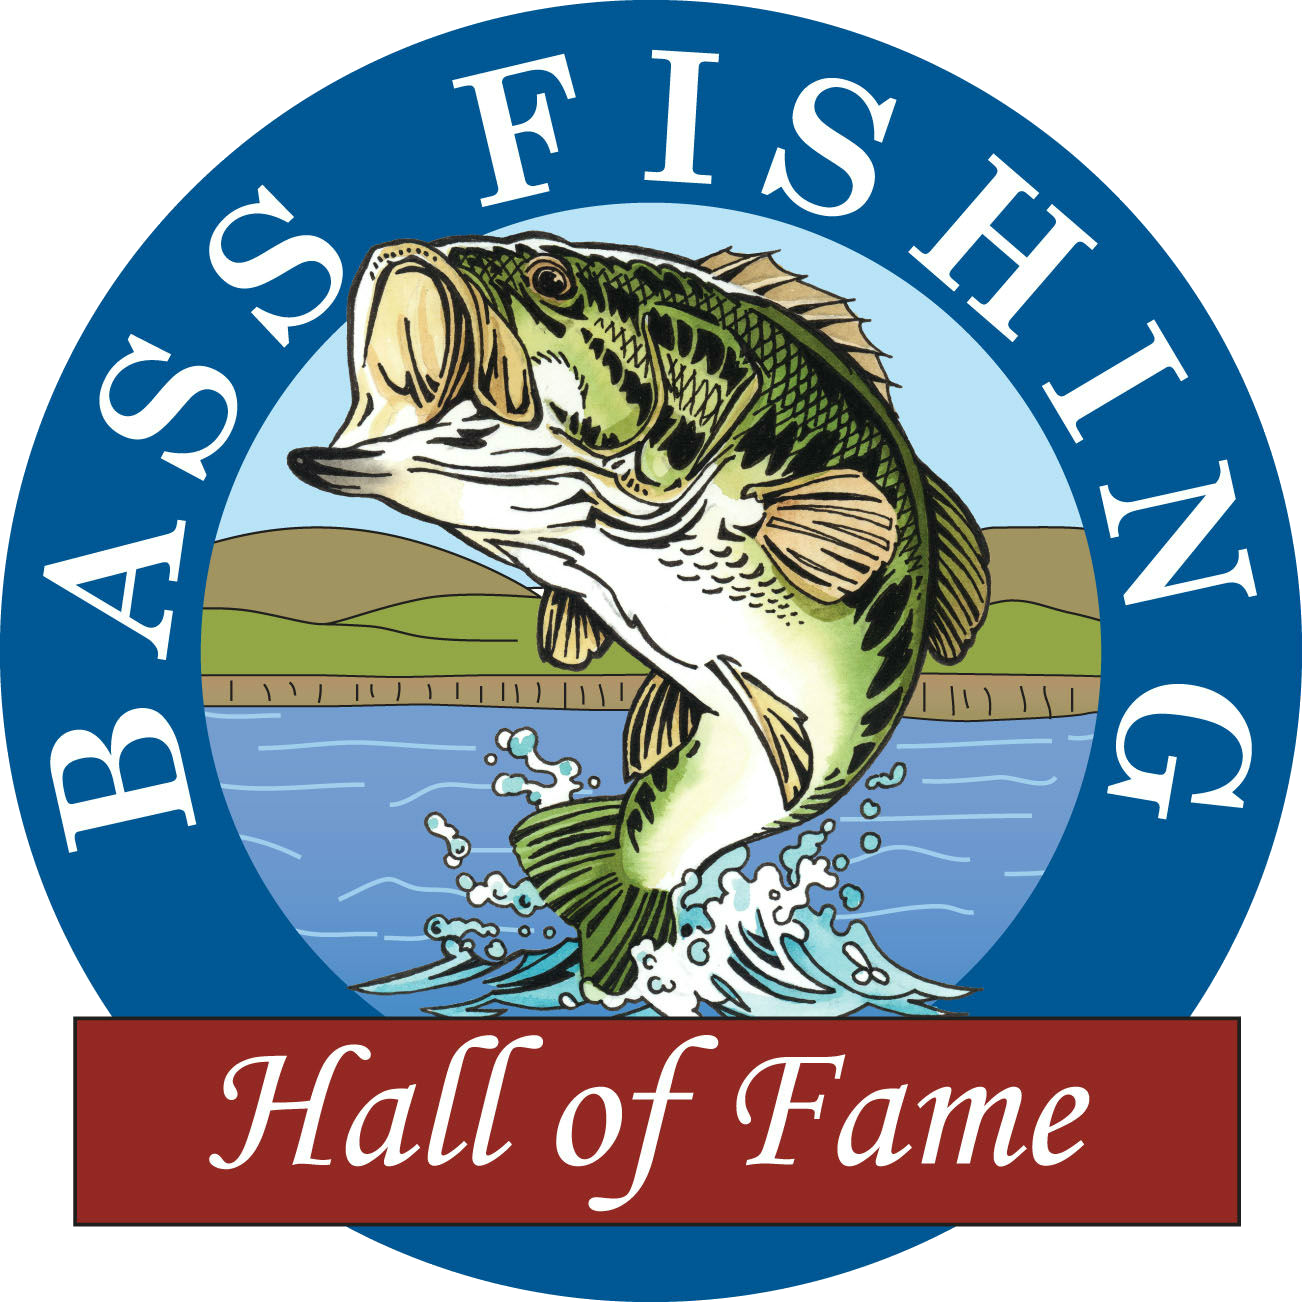 Bass Fishing Hall Of Fame Recognizes Yamaha Pro's Many Accomplishments -  Yamaha Outboards